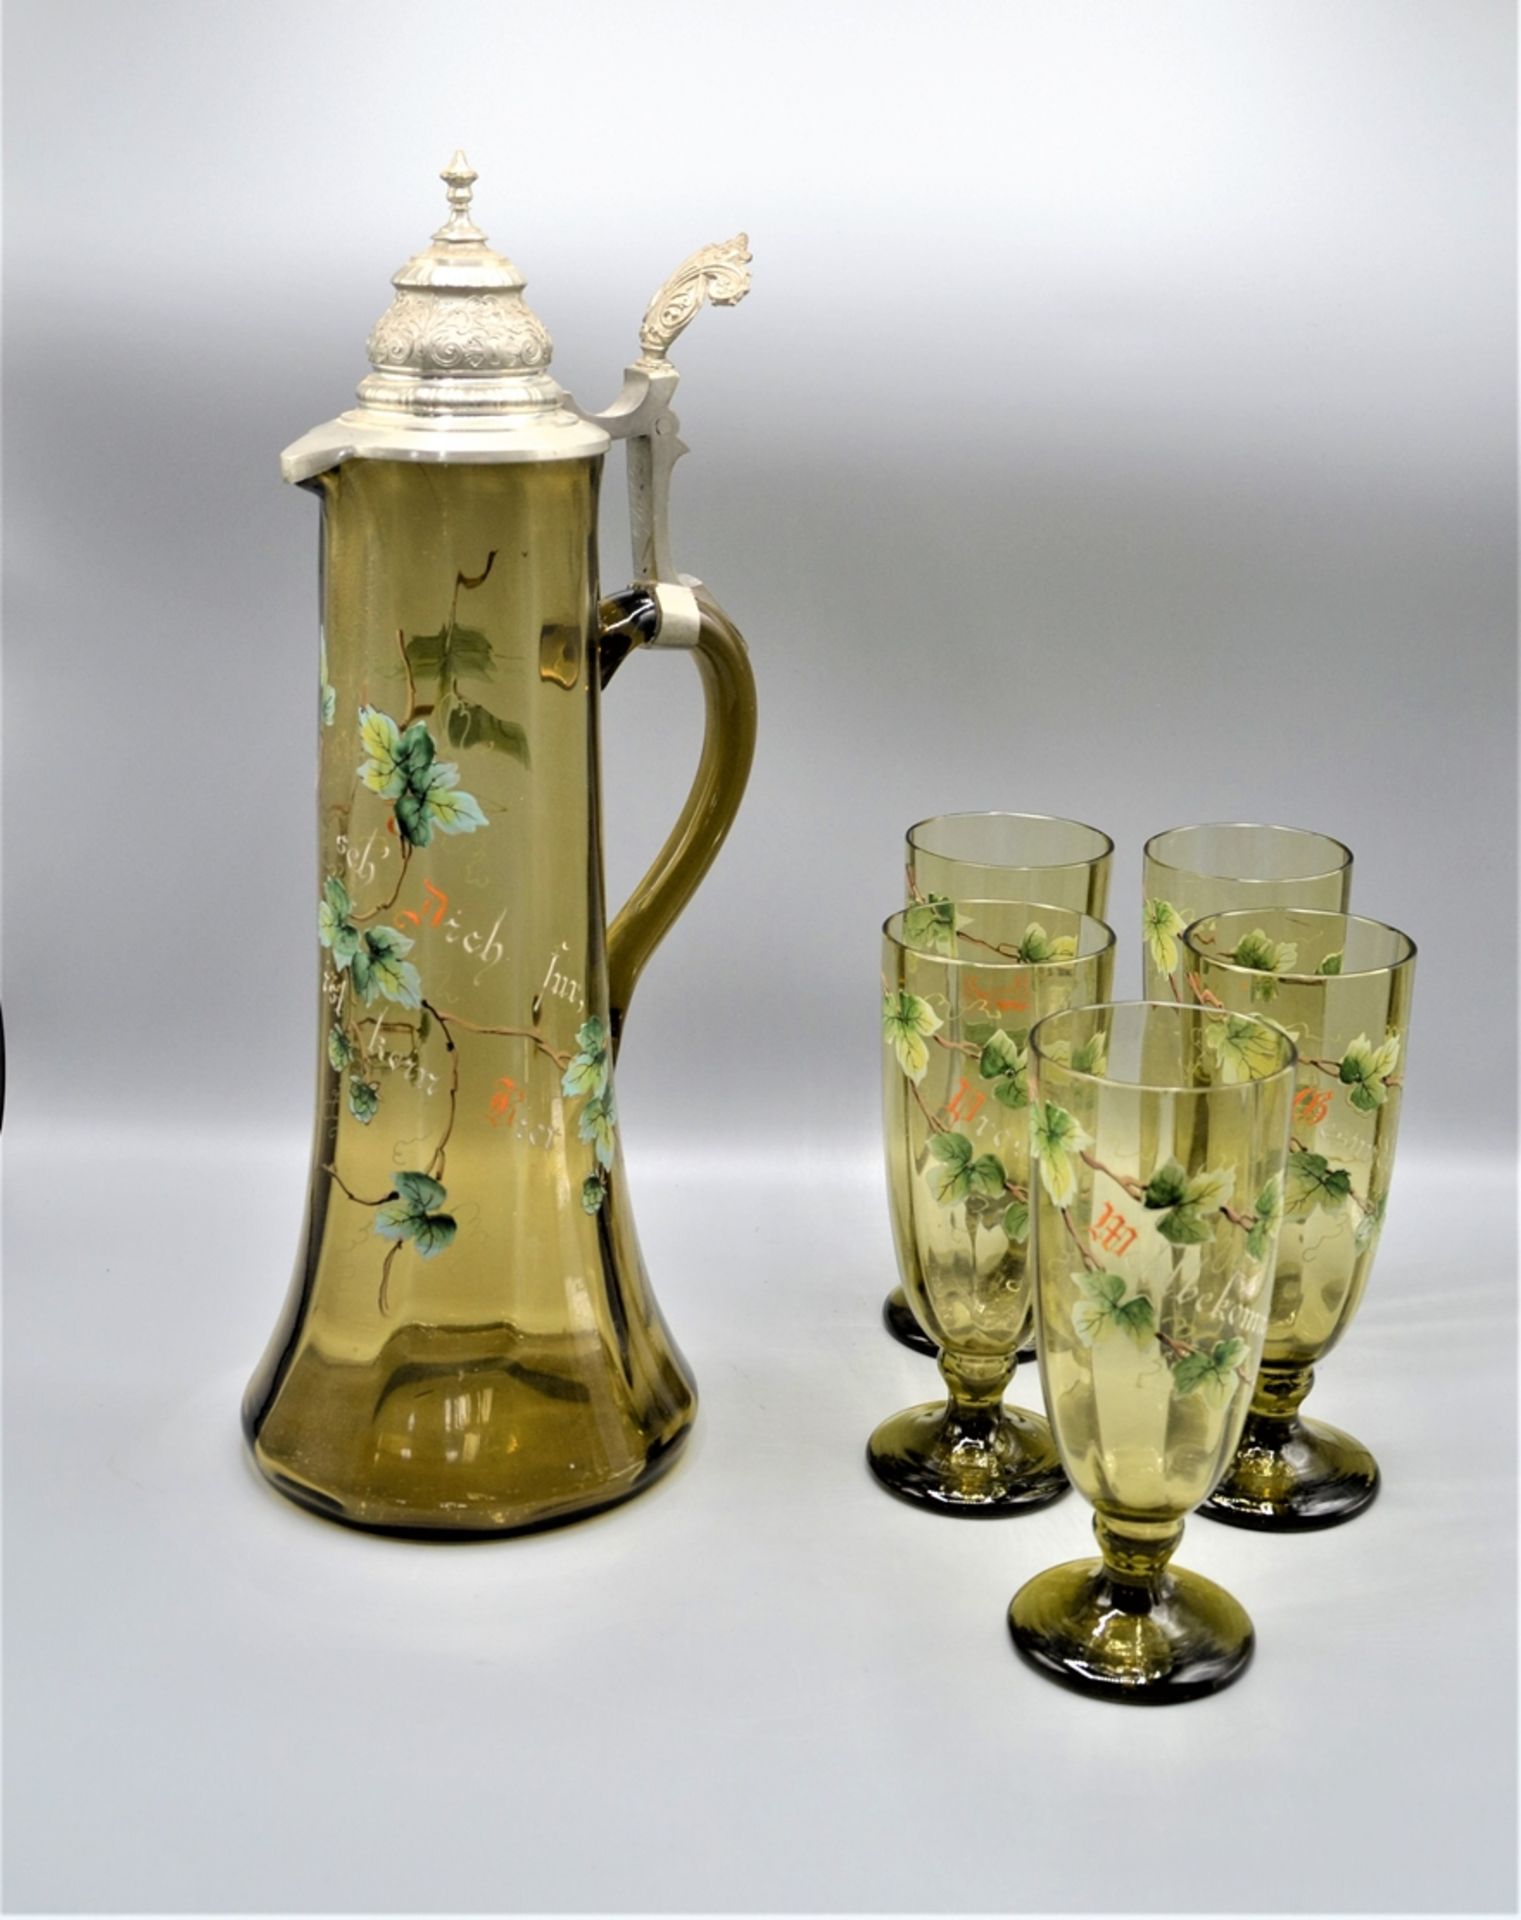 Glas Krug Schankkrug mit 5 Gläsern um 1900, emailliert mit Hopfen Stauden und Trinksprüchen, mundge - Image 2 of 3